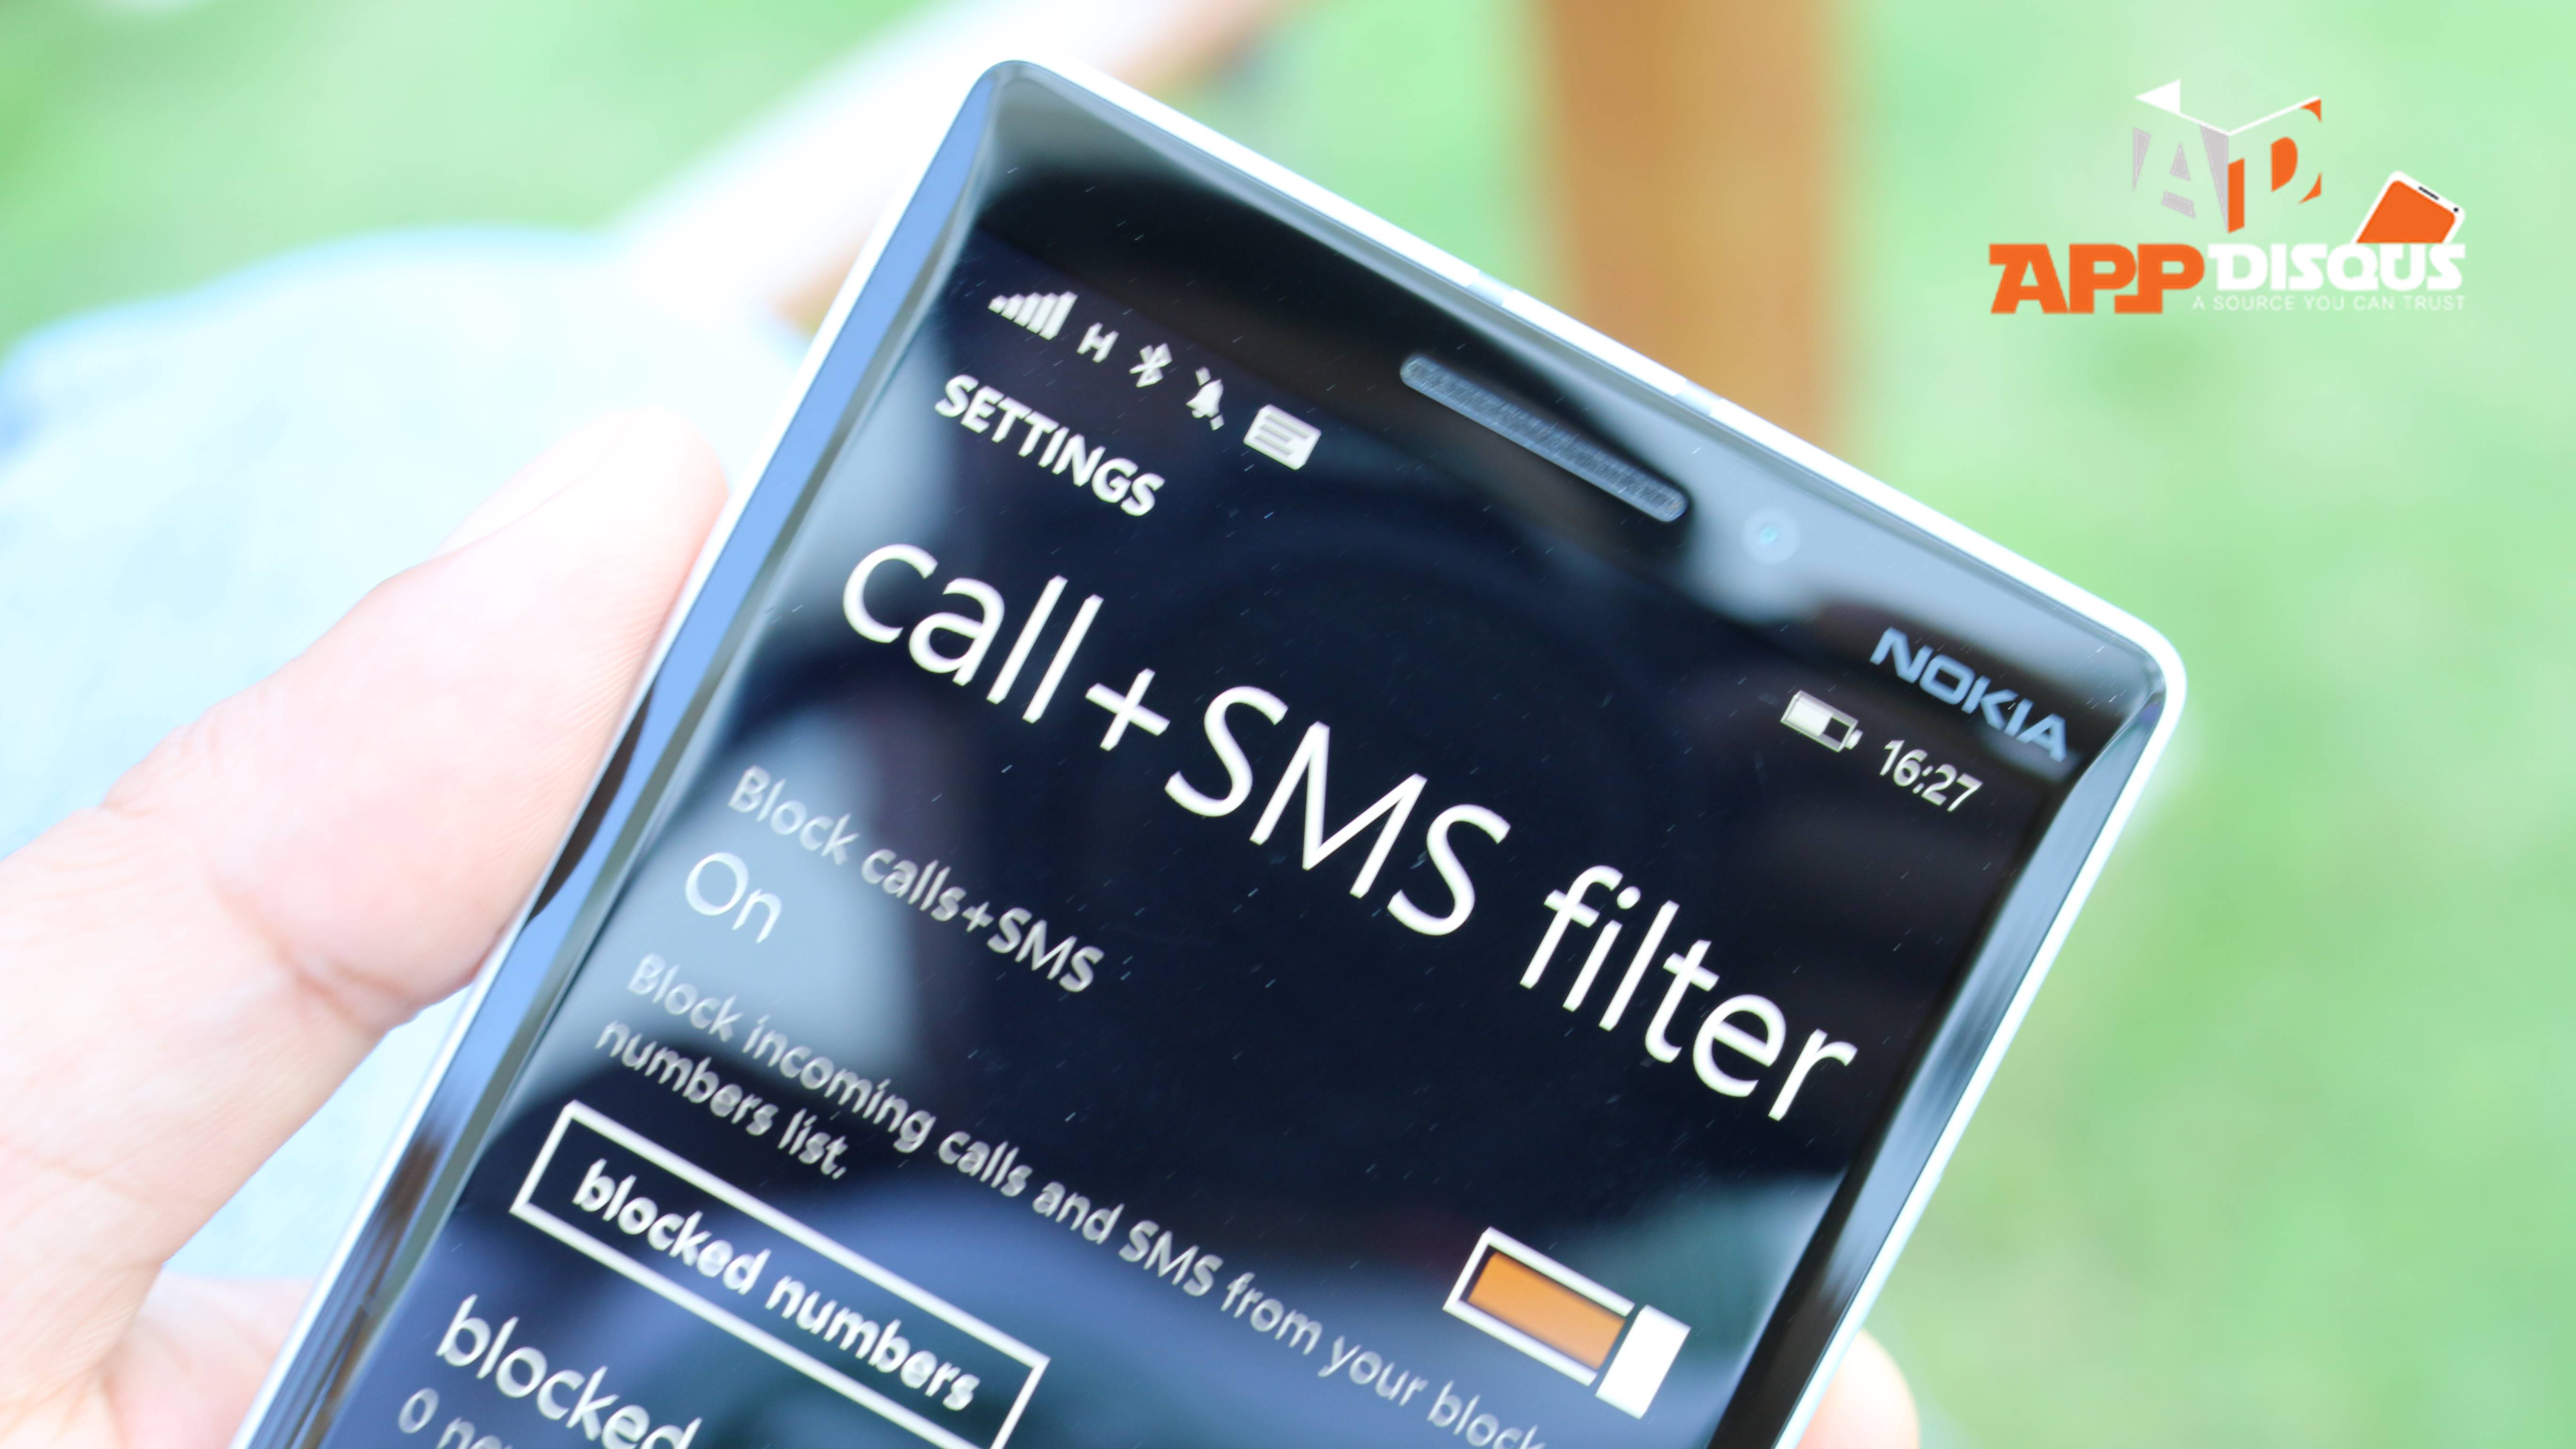 quiet hours on Windows Phone Lumia Nokia 41 | Microsoft Lumia | [TIP] แนะนำพร้อมวิธีใช้งานฟังก์ชัน call + SMS filter หรือ ตัวกรองสาย + SMS สำหรับ Windows Phone